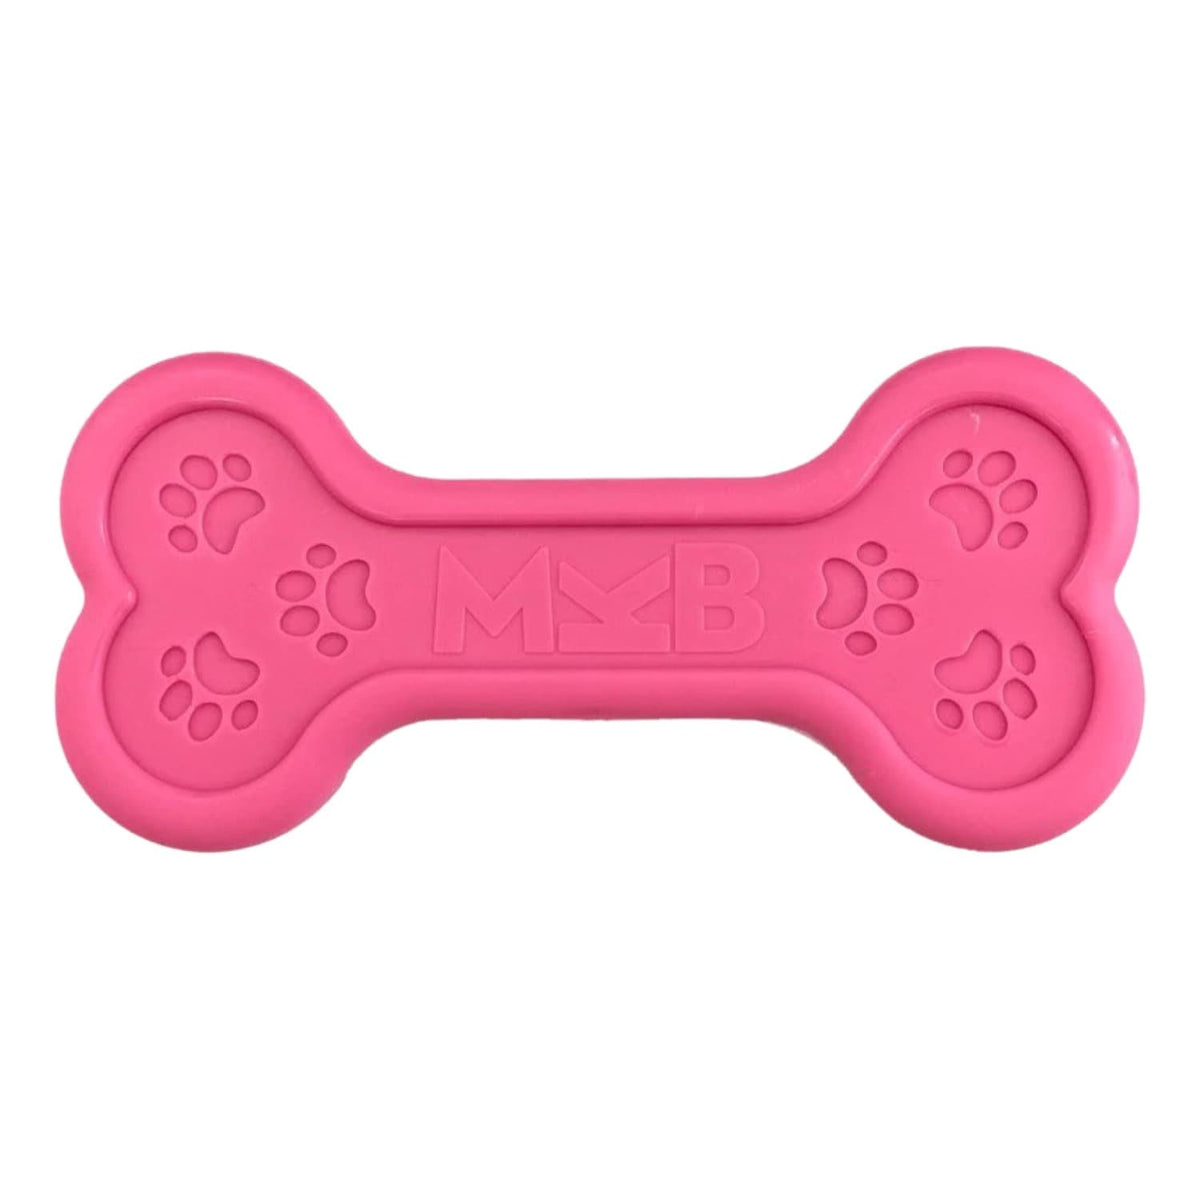 Sodapup Pink MKB Nylon Dog Chew Bone Toy